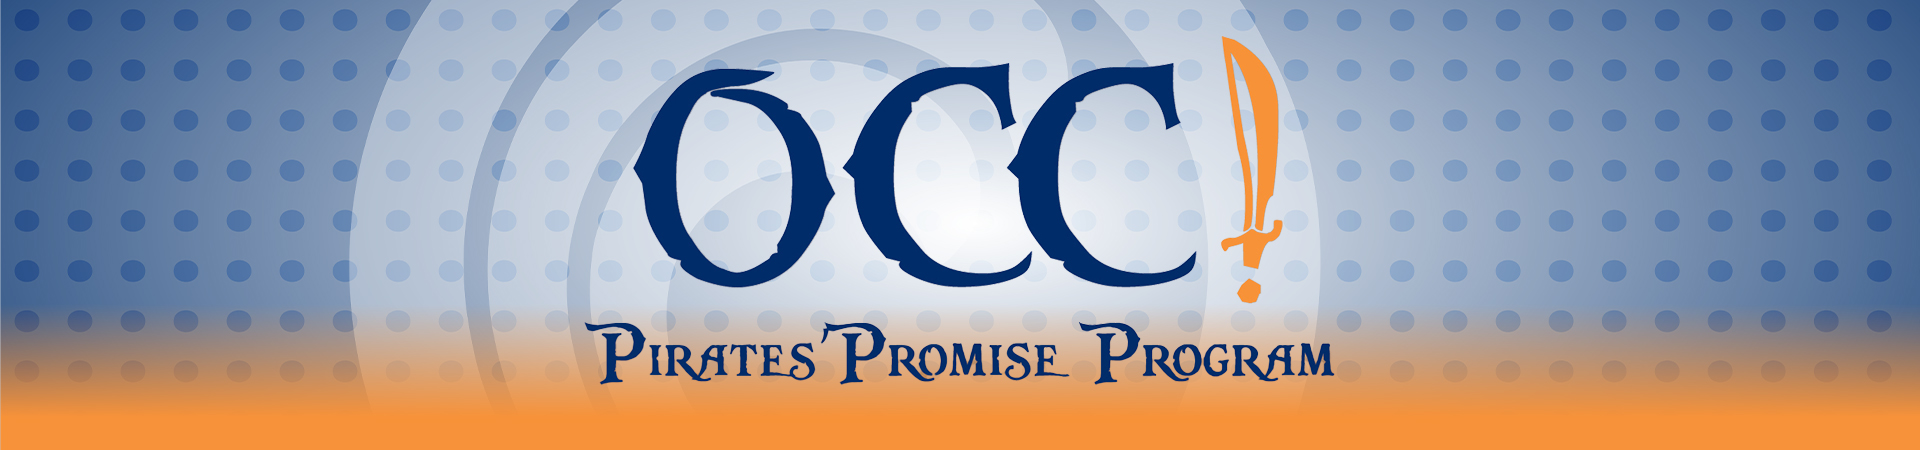 OCC Pirates' Promise Program